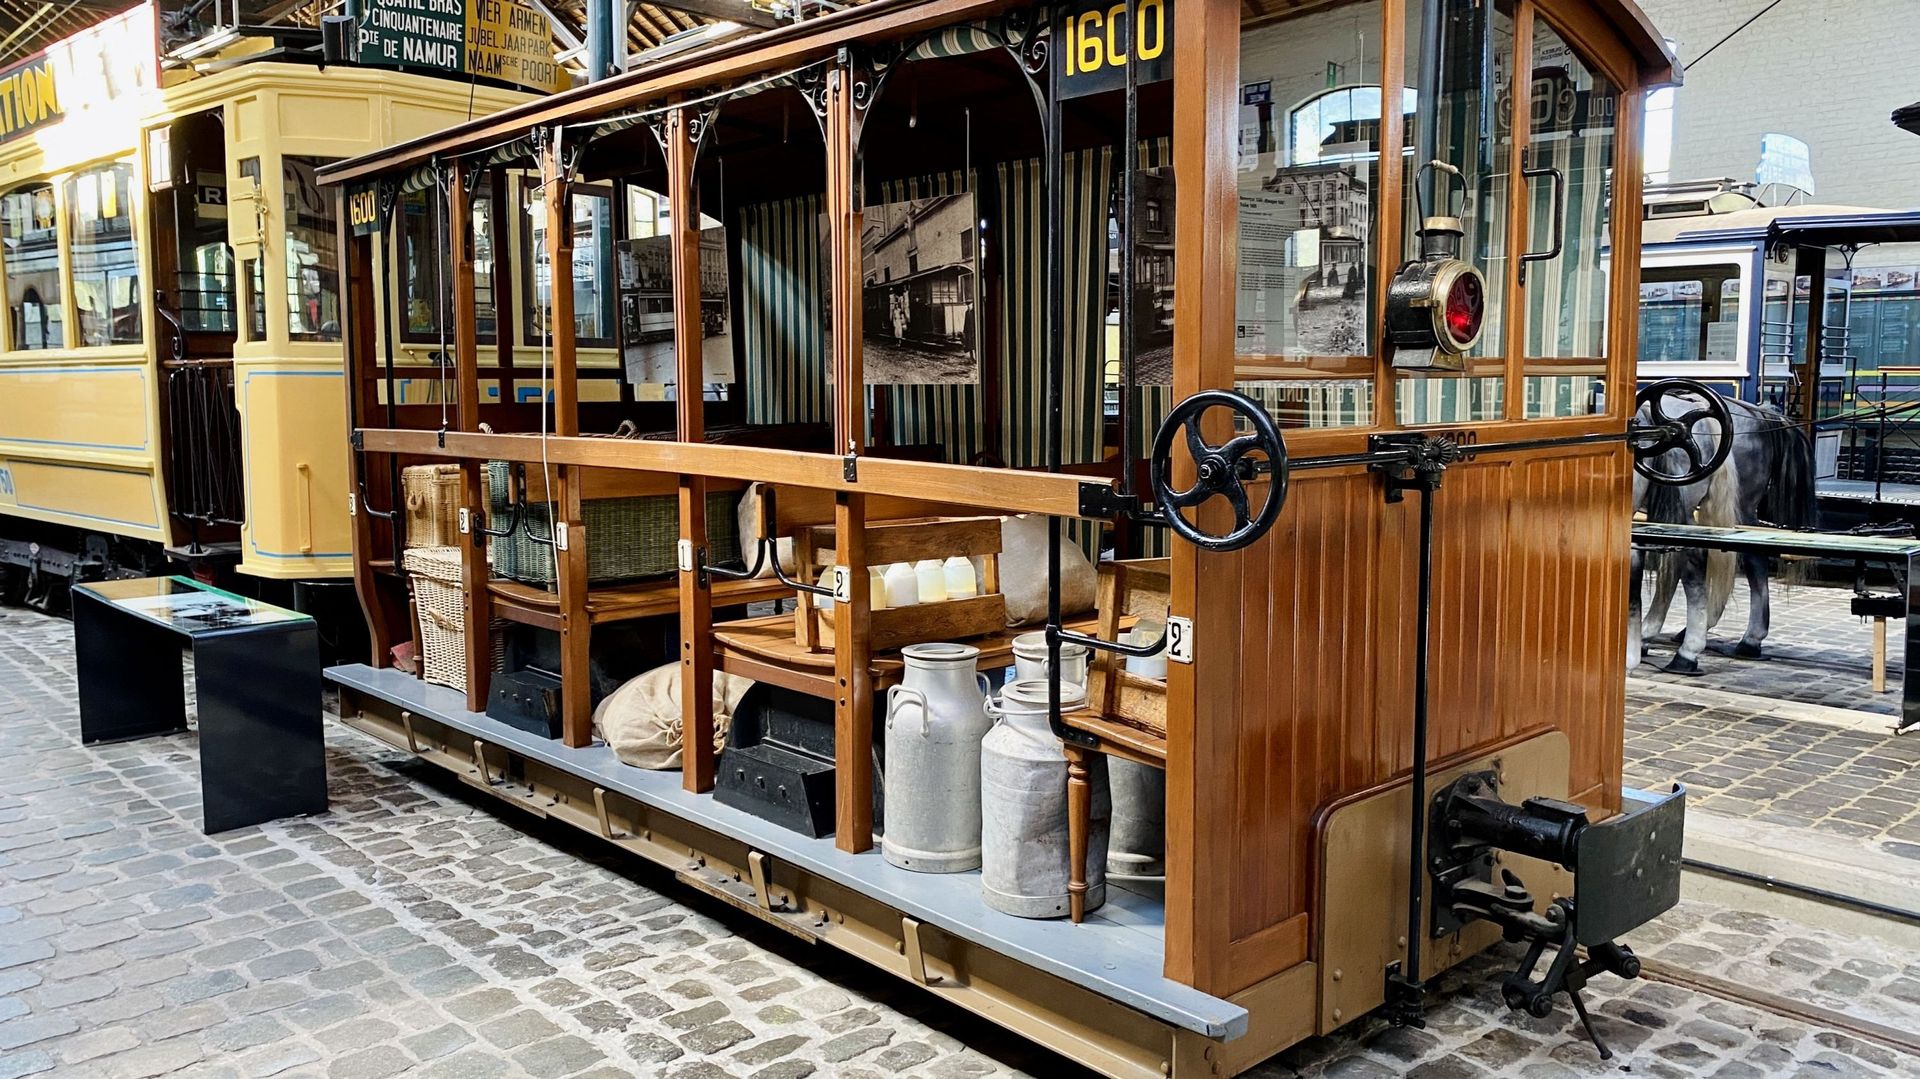 Durant la première guerre mondiale, le tram deviendra le seul moyen de transport disponible à Bruxelles.